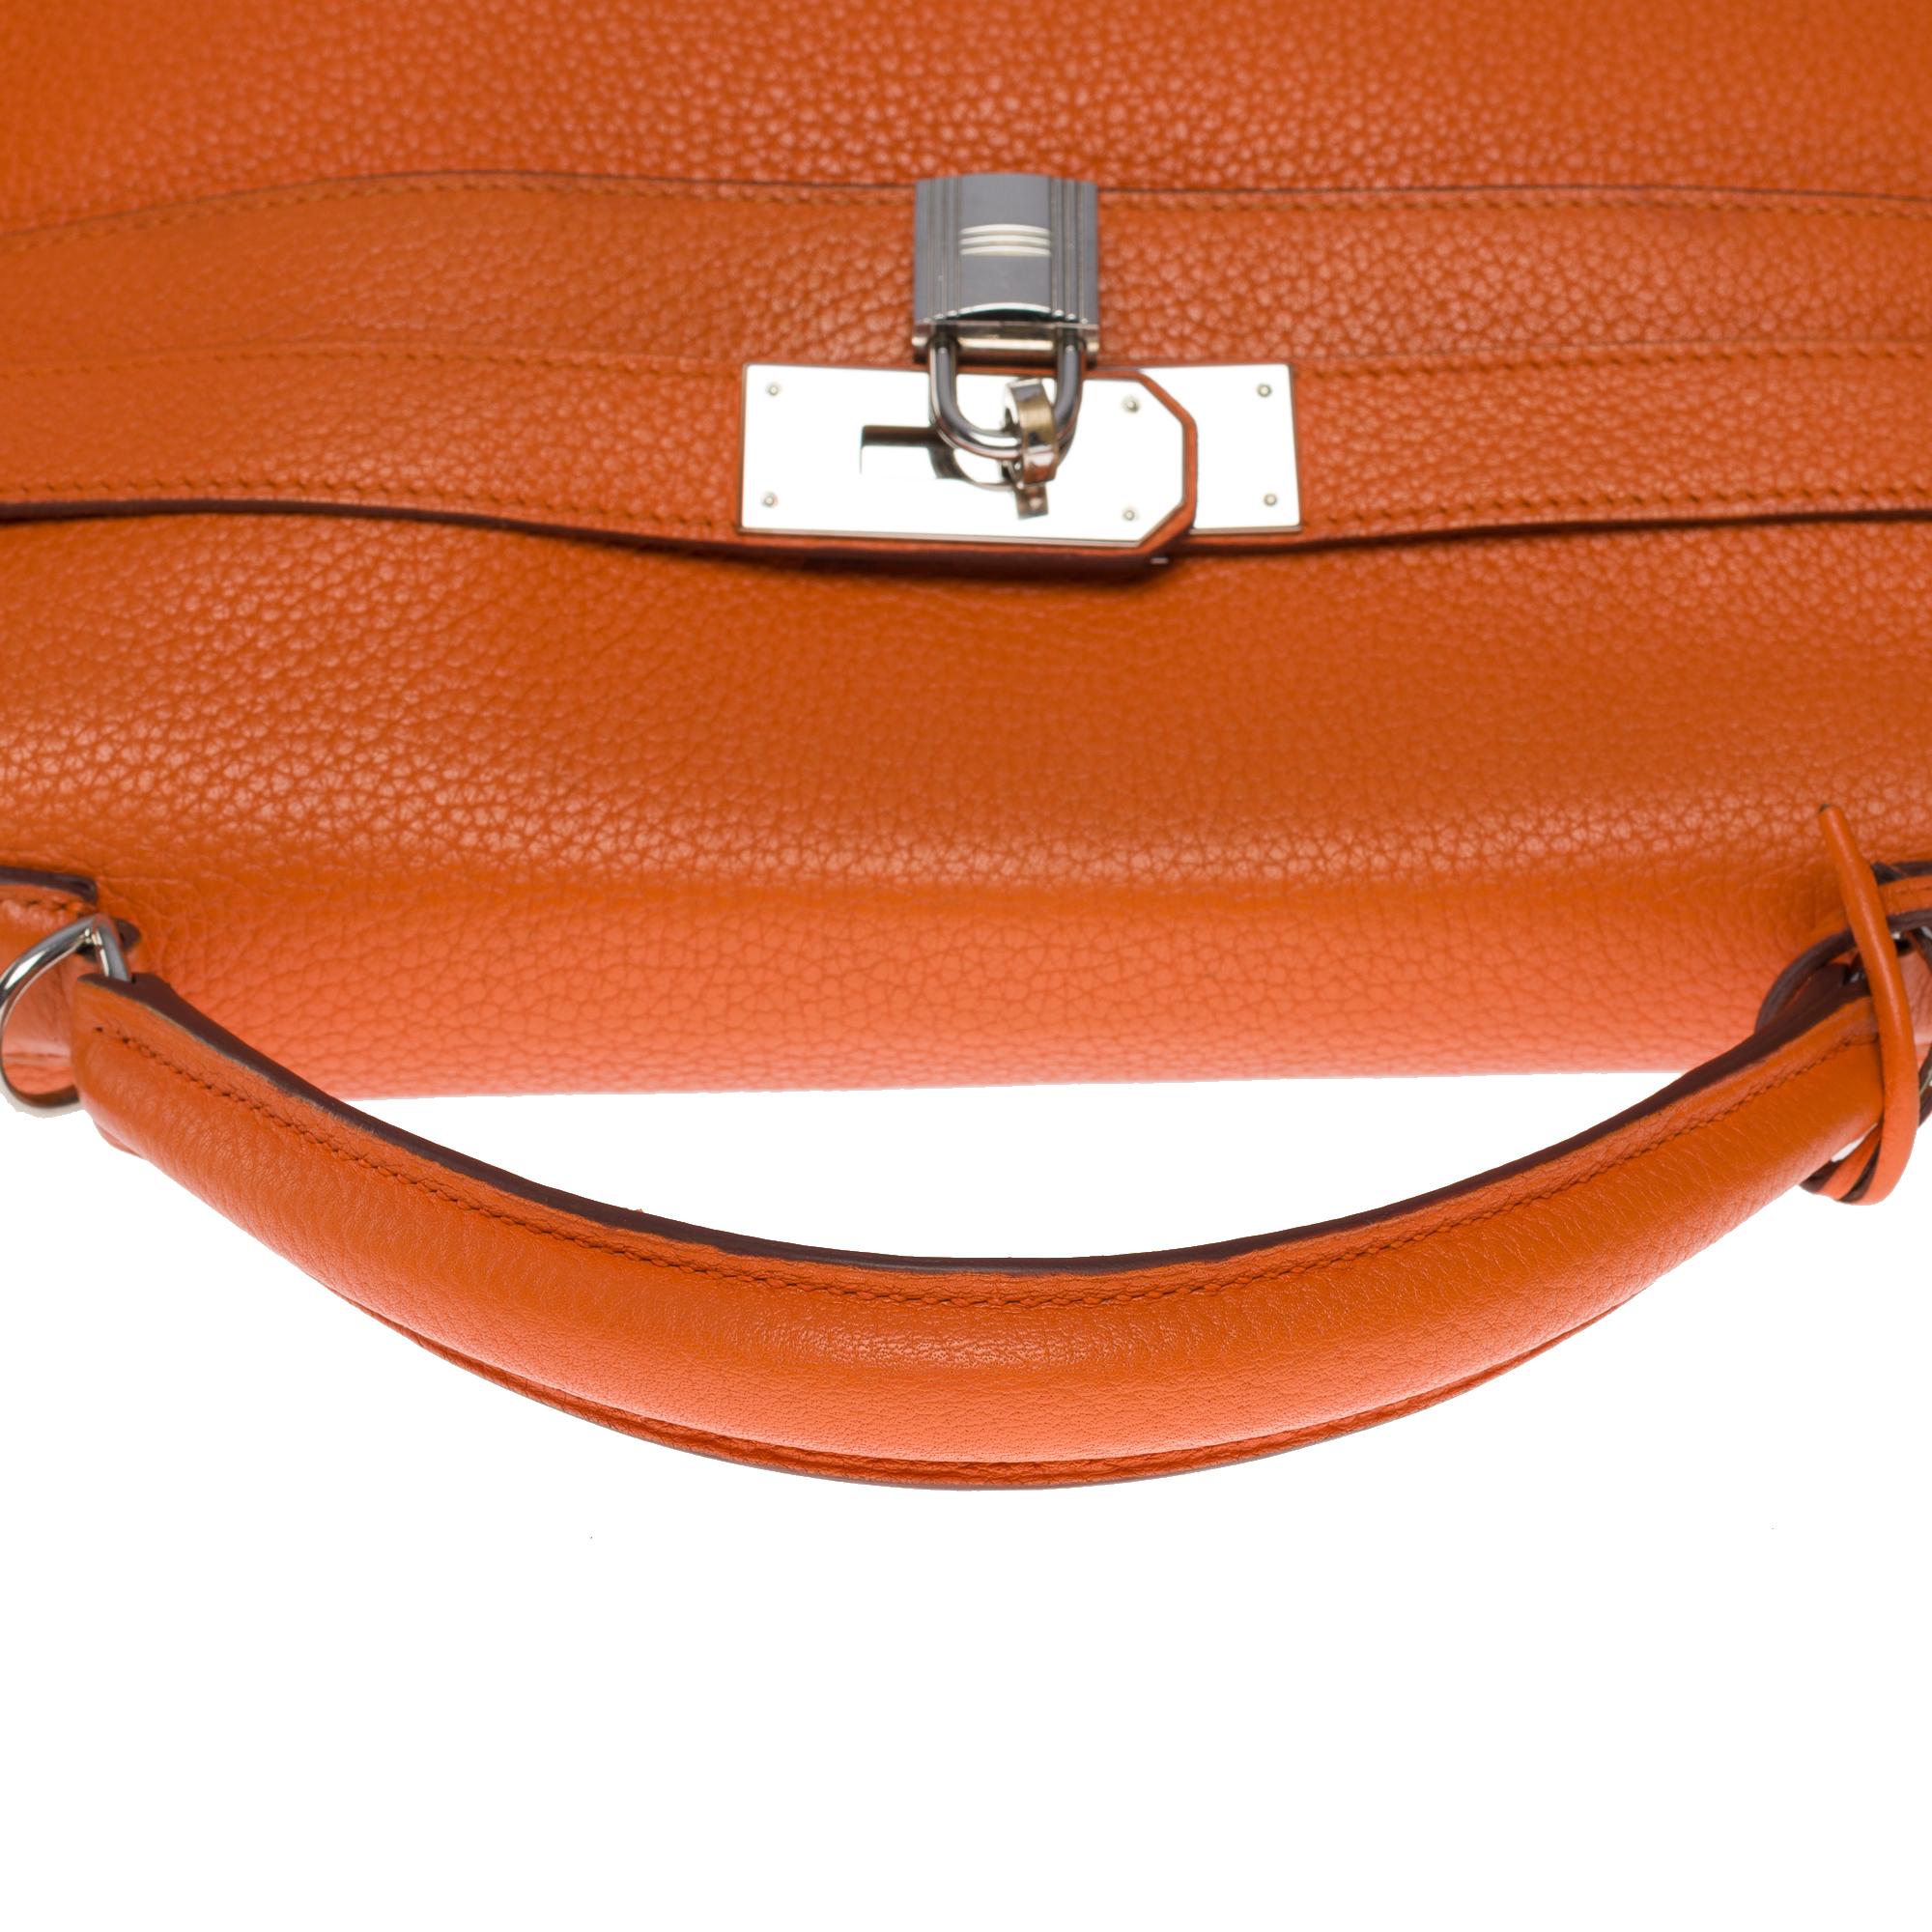 Hermes Kelly 40 retourne handbag strap in Orange Togo leather, SHW 6